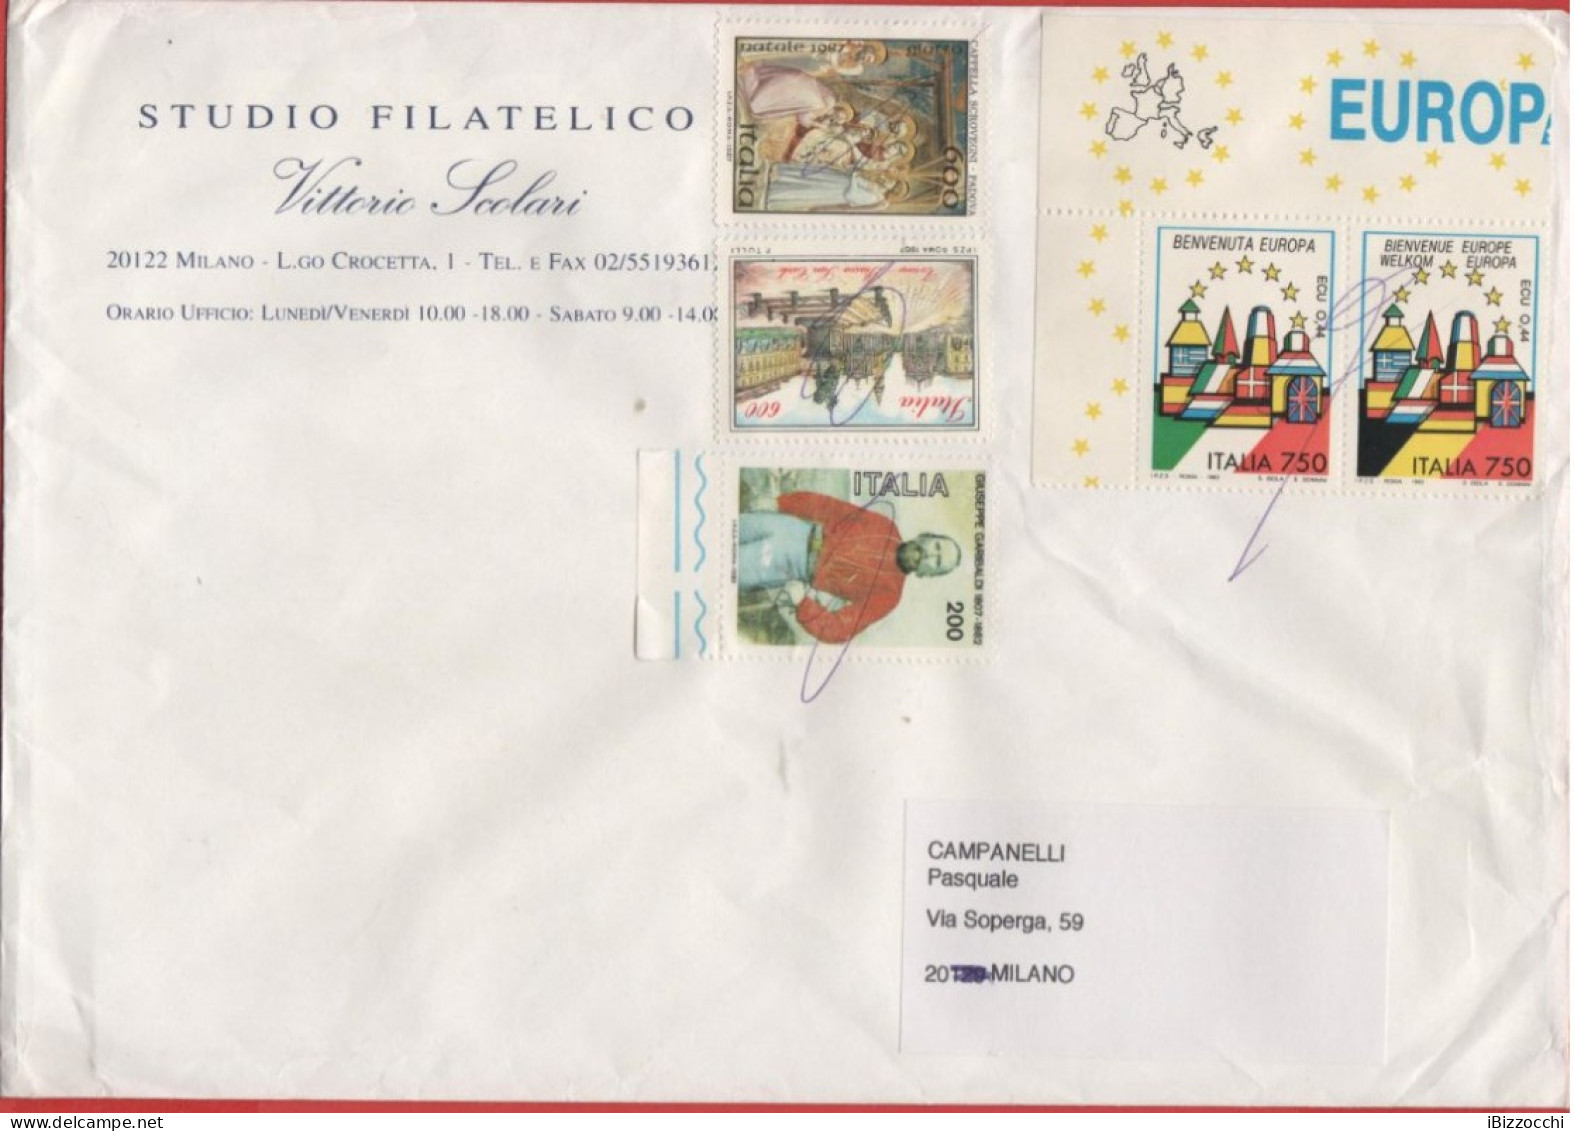 ITALIA - Storia Postale Repubblica - 2011 (Annullo A Penna) - 5 Francobolli Dal 1982 Al 1993 - Studio Filatelico Scolari - 2011-20: Marcophilia